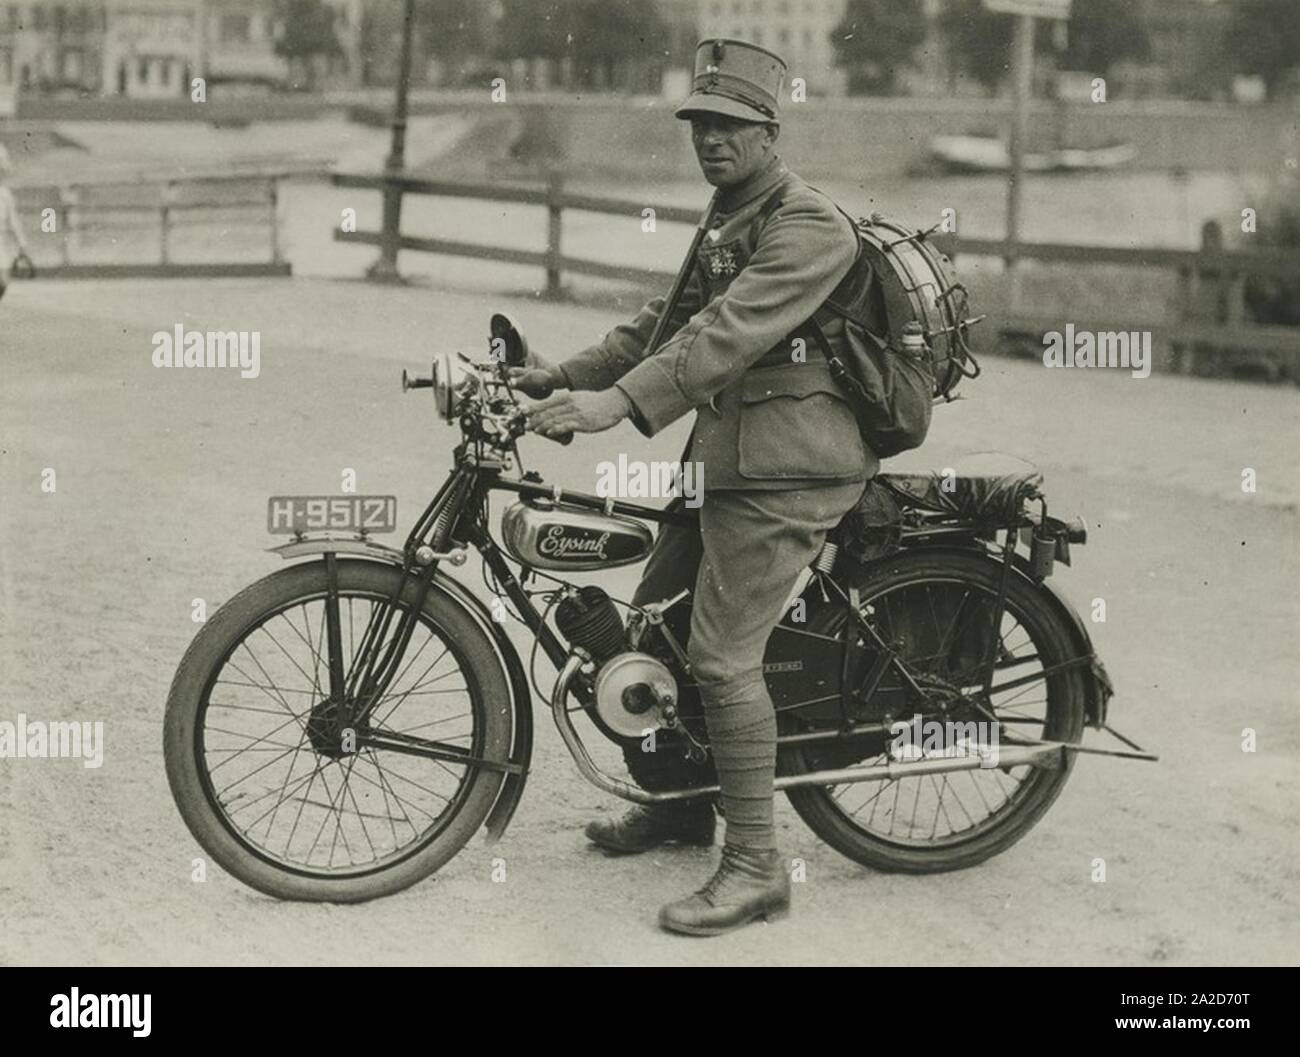 Een korporaal trommelslager met Vierdaagse ervaring op zijn Eysink motor aan het – Stock Photo